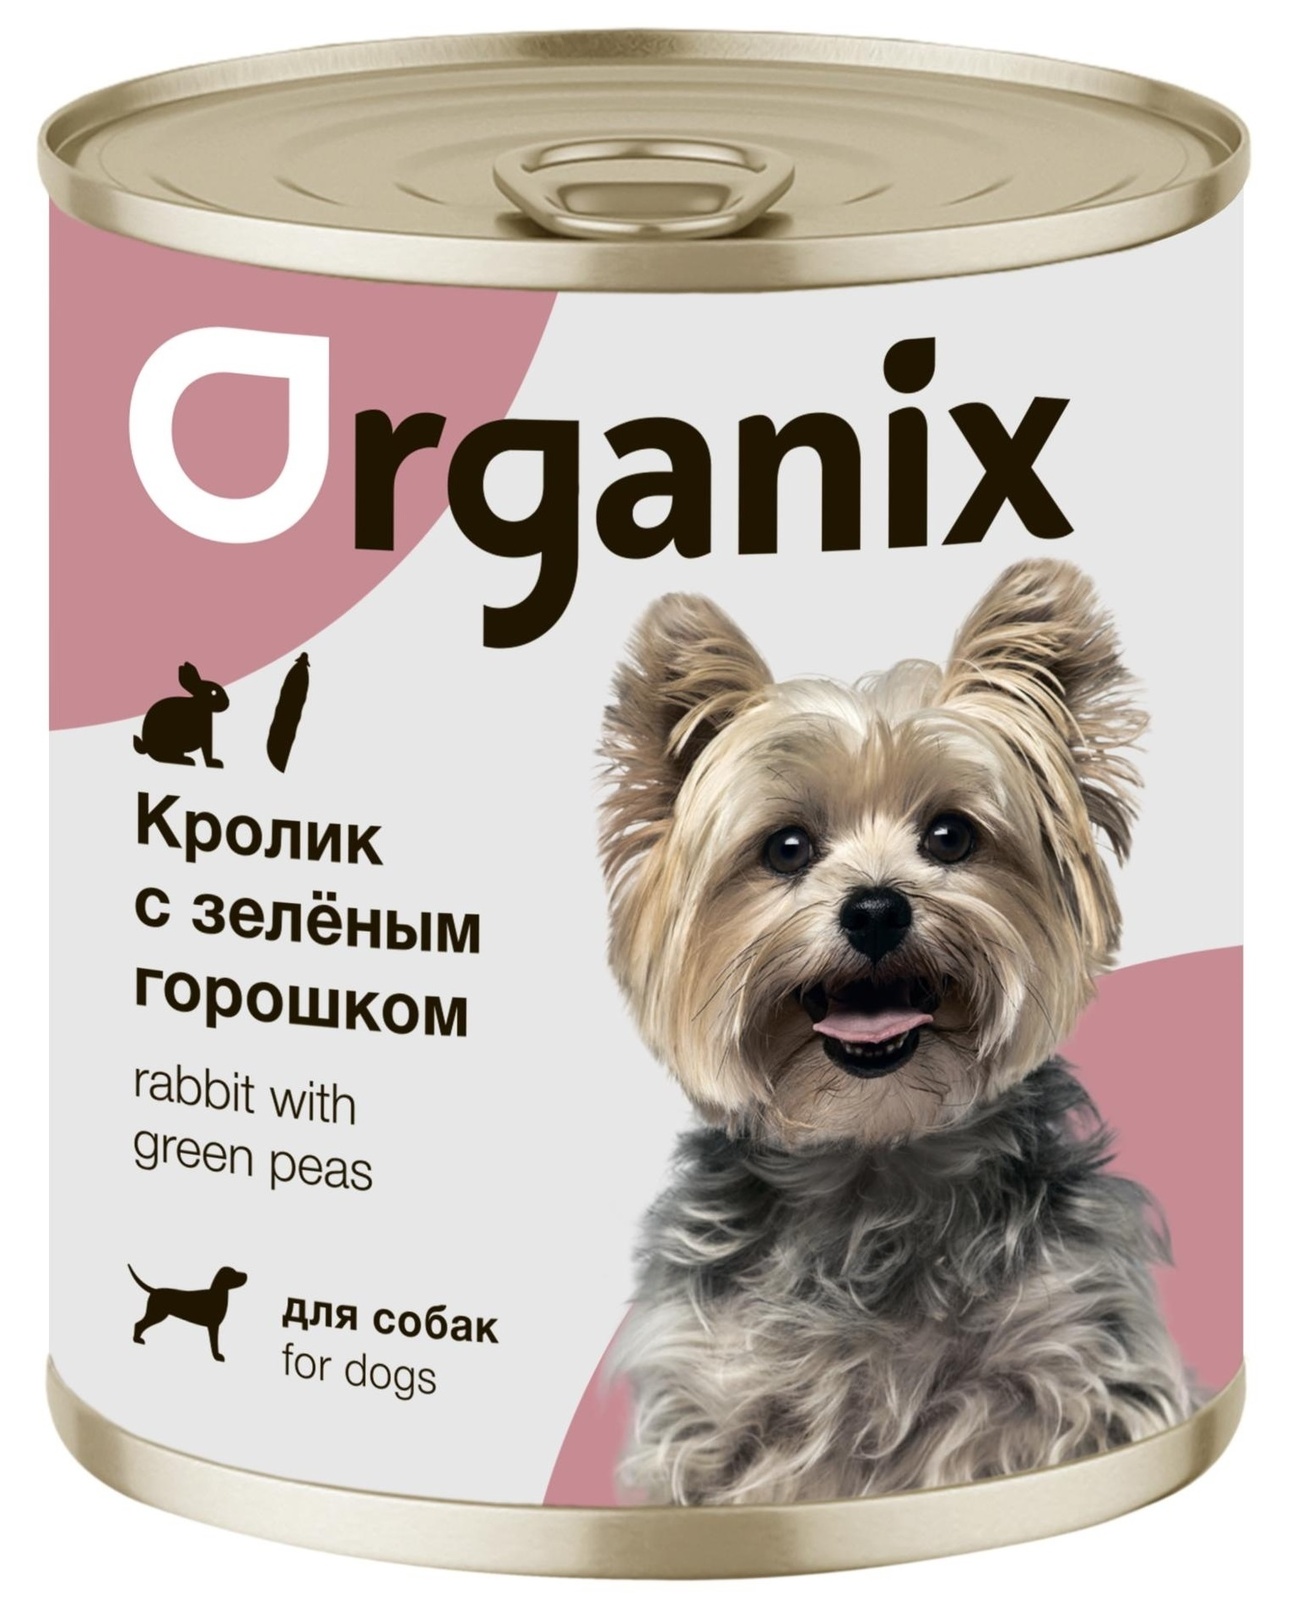 Organix консервы Organix консервы для собак Кролик с зеленым горошком (100 г) organix консервы organix консервы для собак телятина с зеленой фасолью 100 г